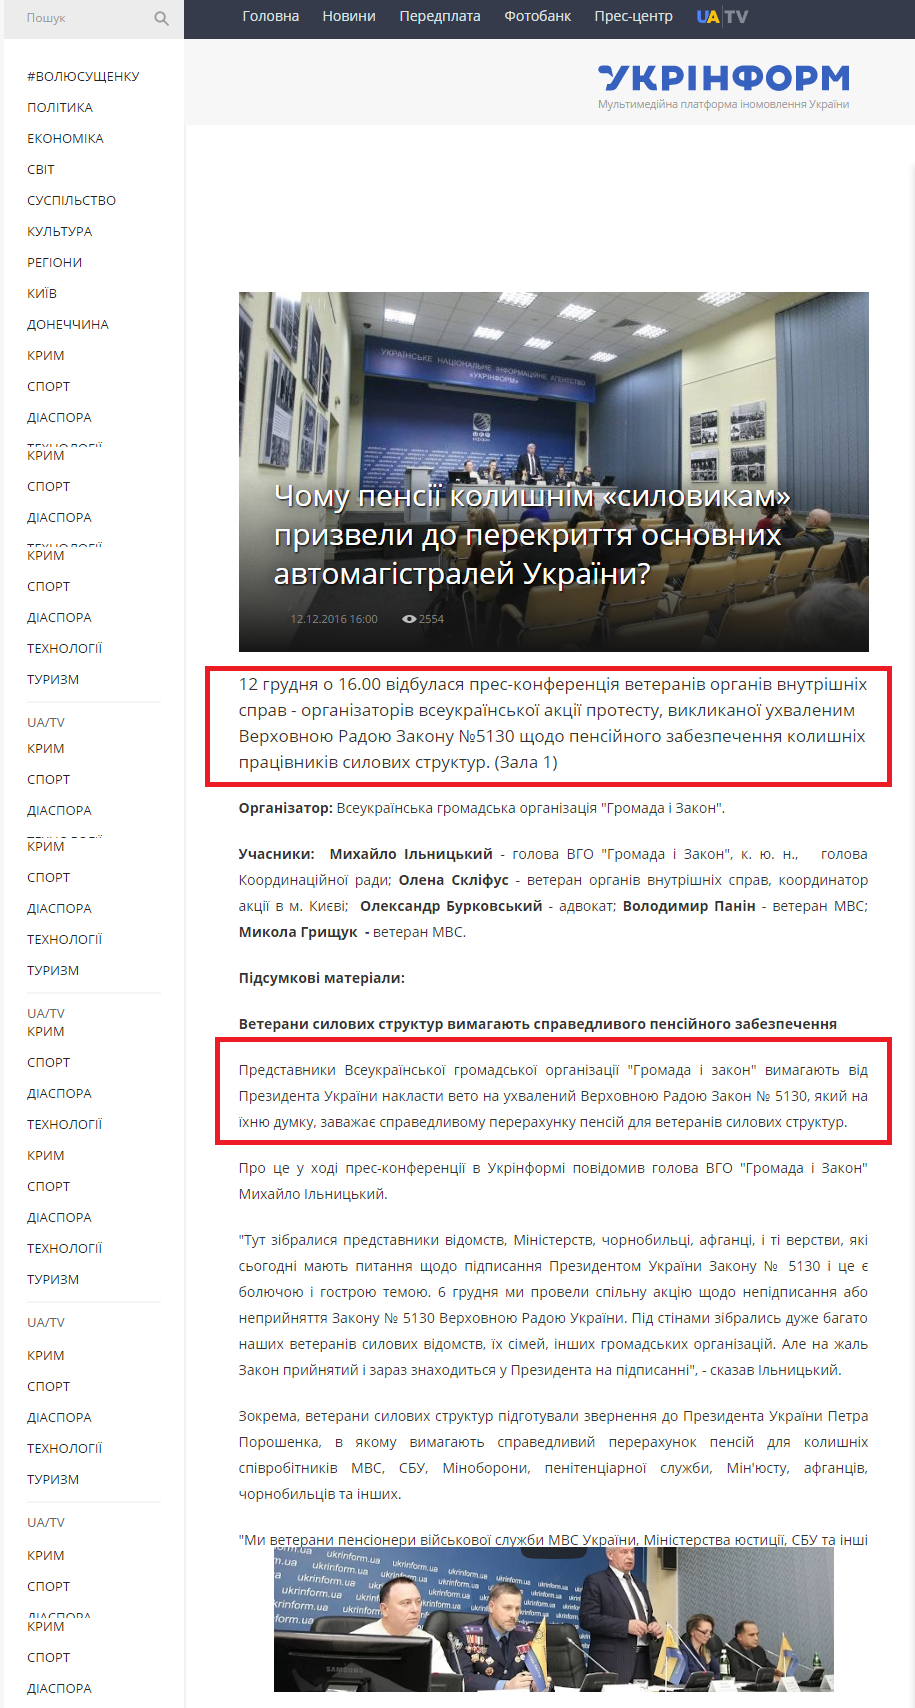 https://www.ukrinform.ua/rubric-presshall/2136042-andrij-saharov-poglad-spramovanij-u-majbutne.html